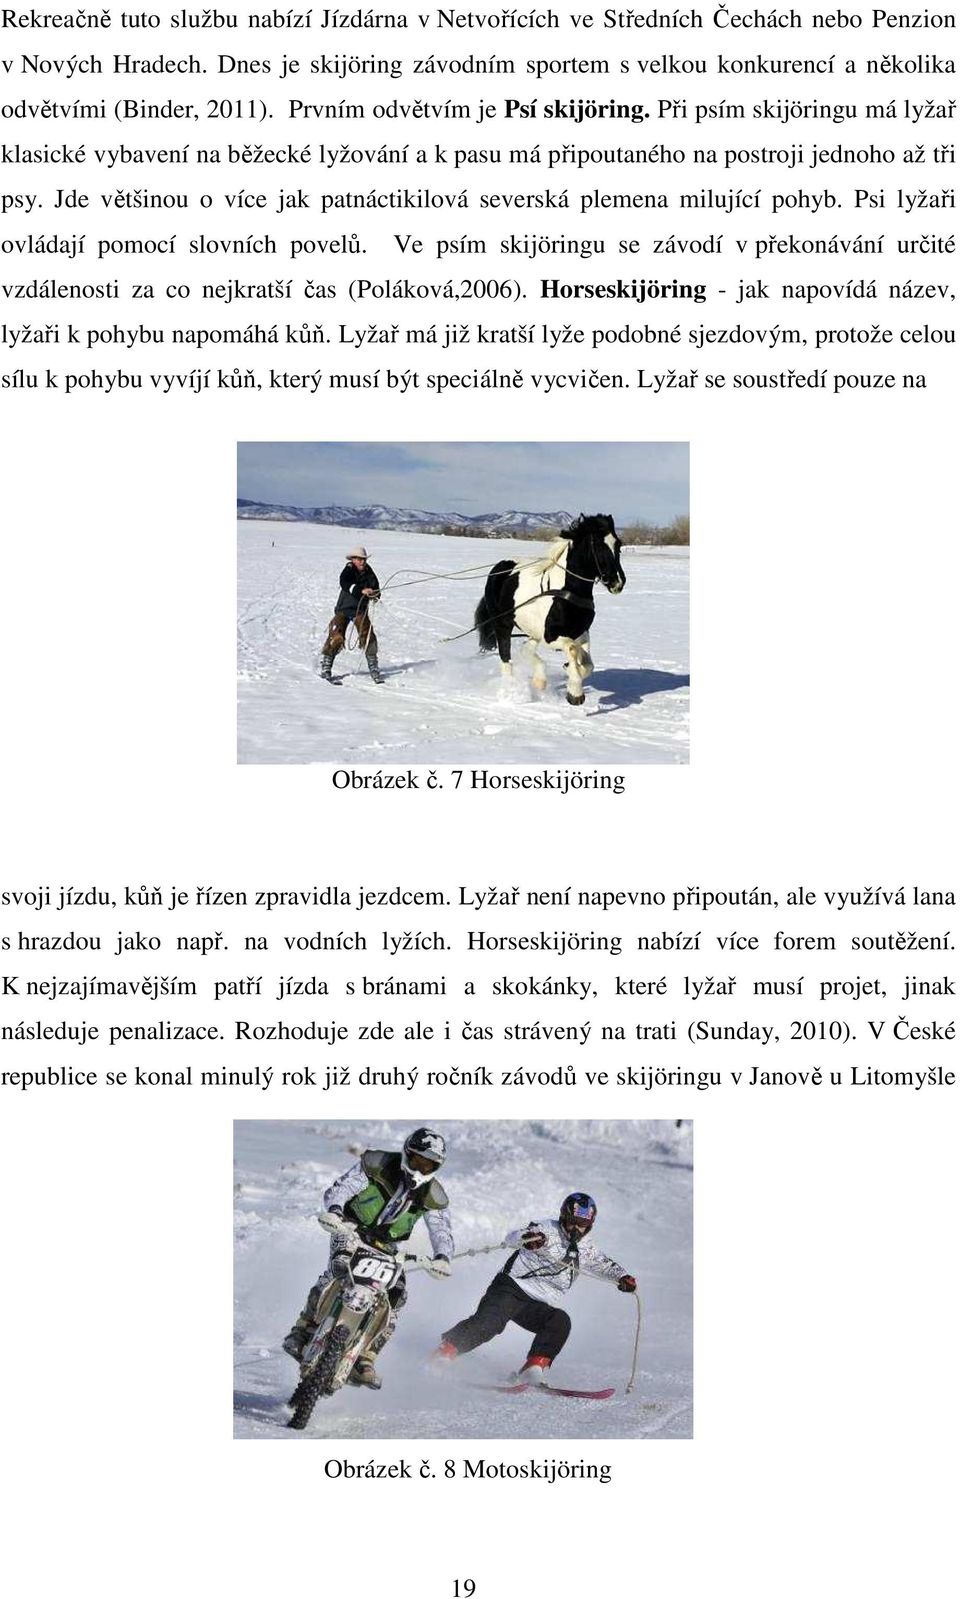 Jde většinou o více jak patnáctikilová severská plemena milující pohyb. Psi lyžaři ovládají pomocí slovních povelů.